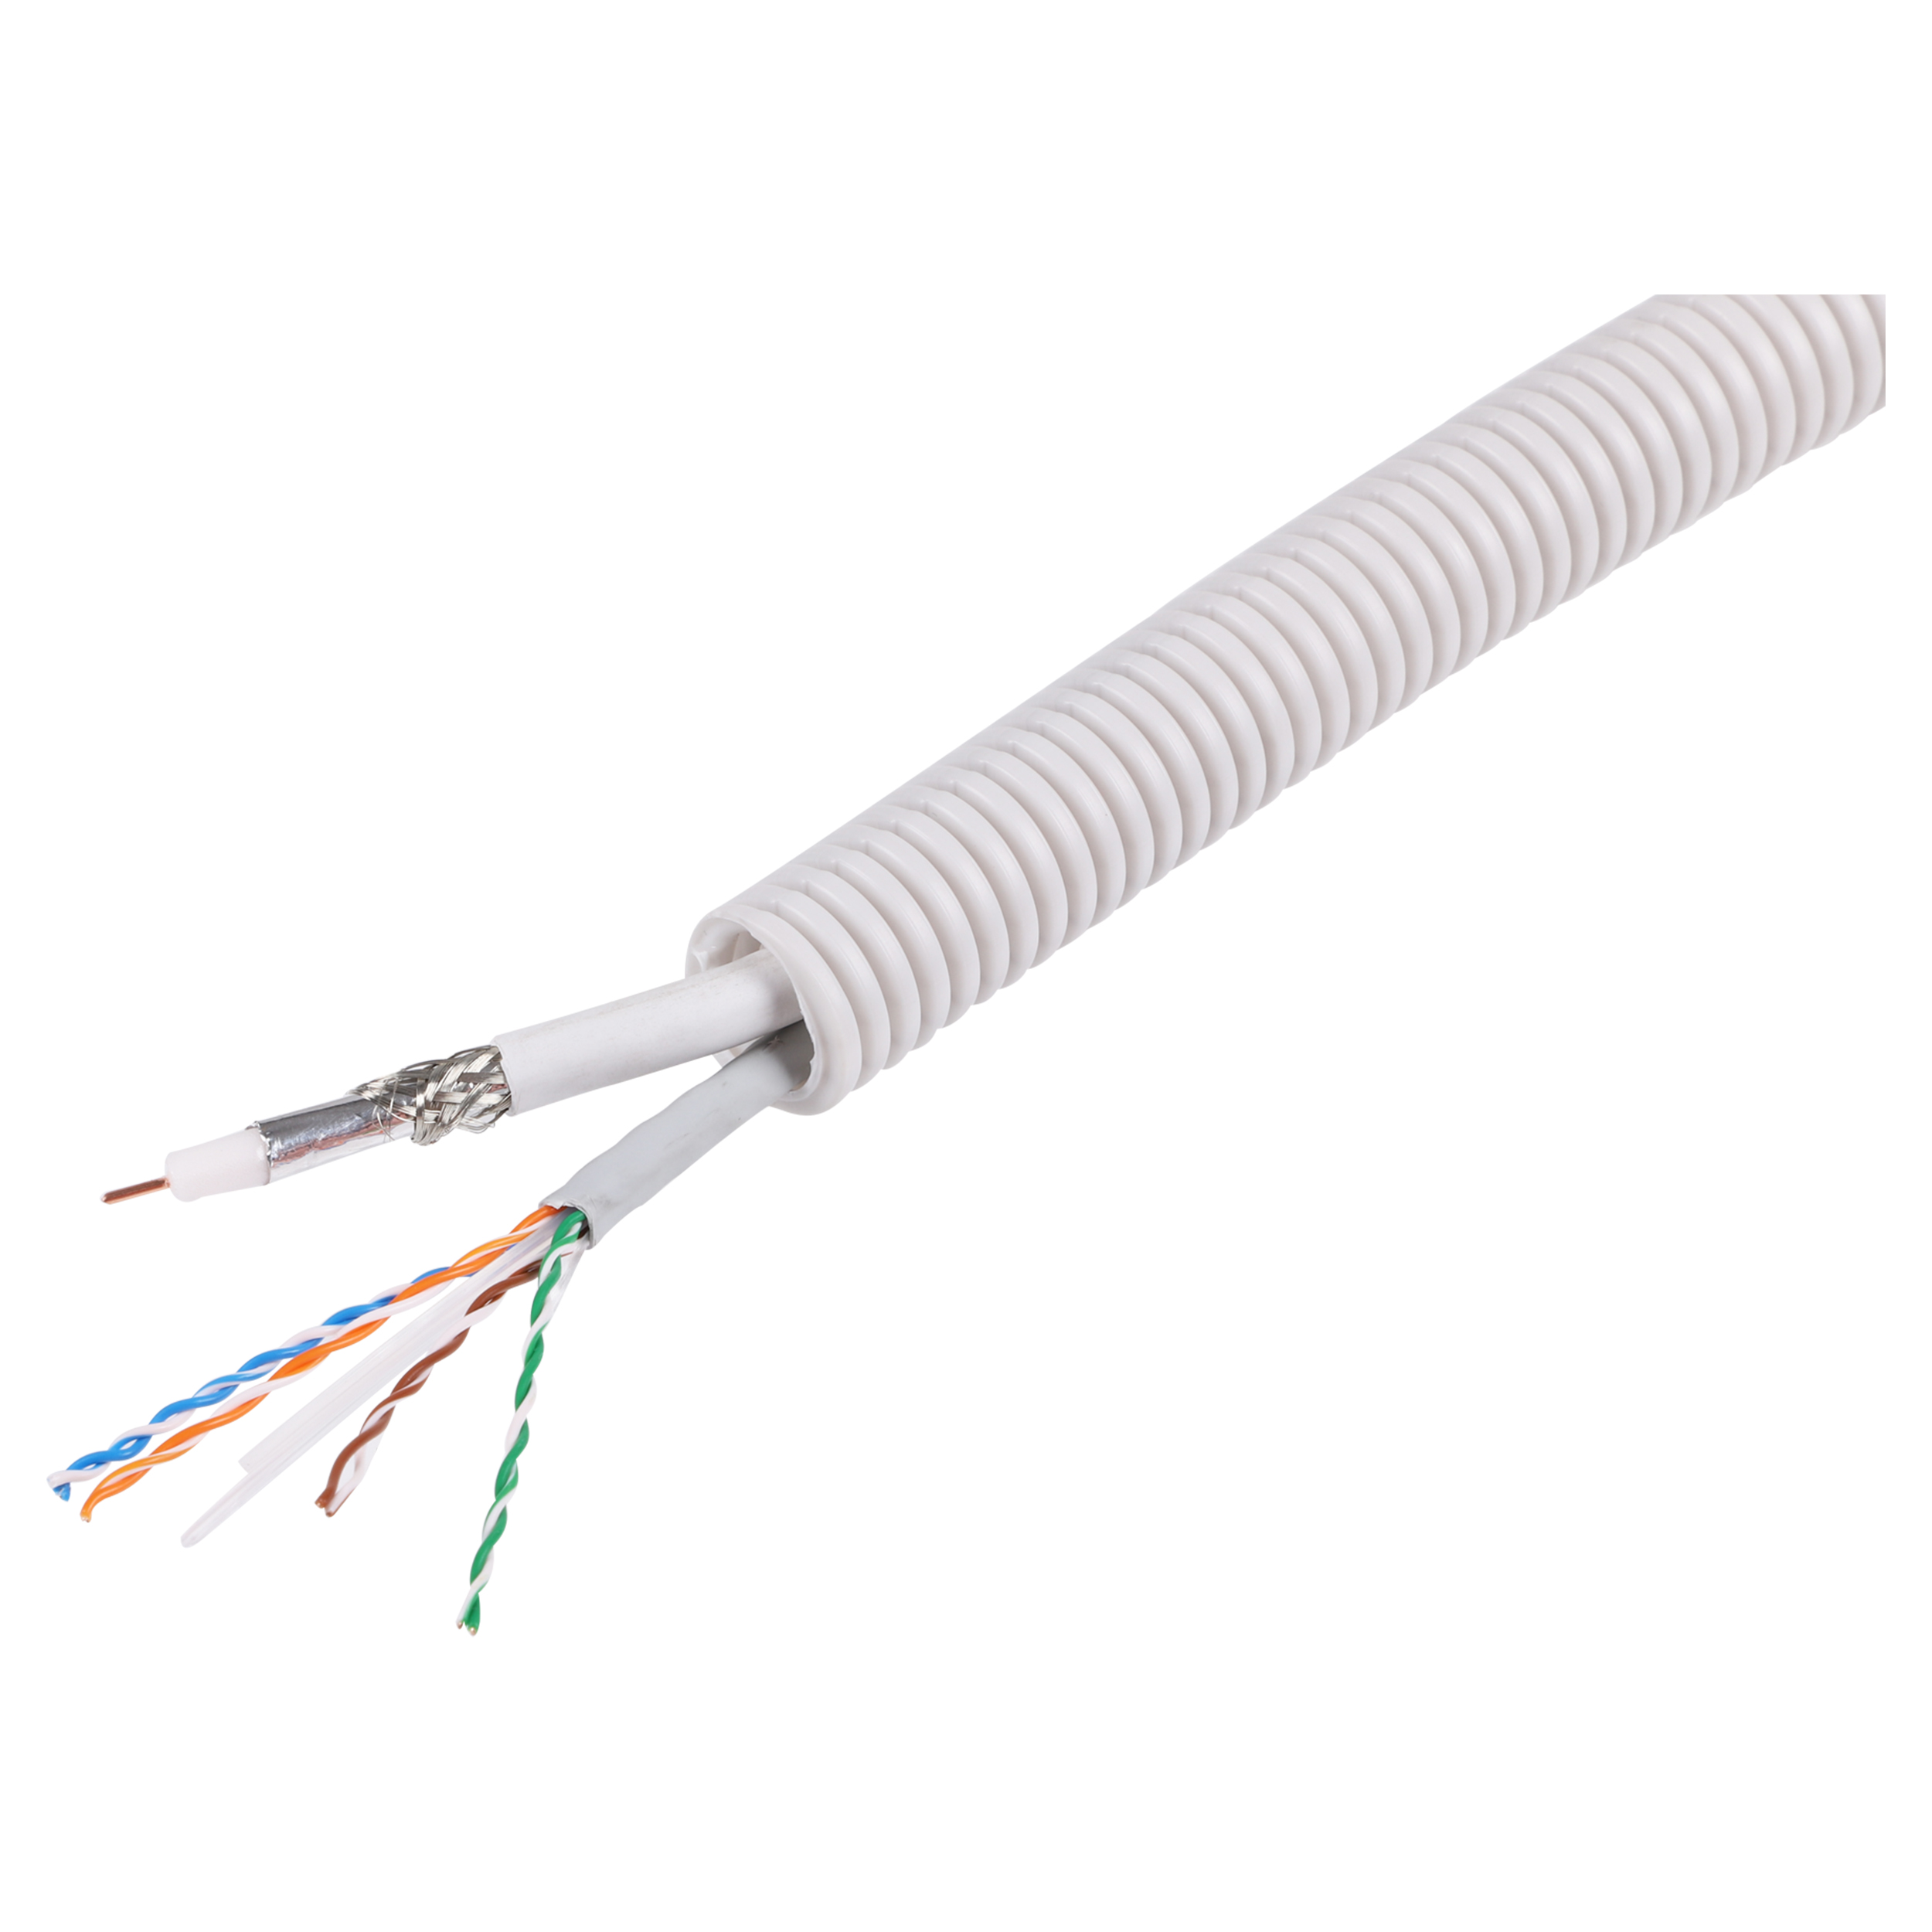 Installatiebuis flexibel met UTP CAT6/COAX kabel